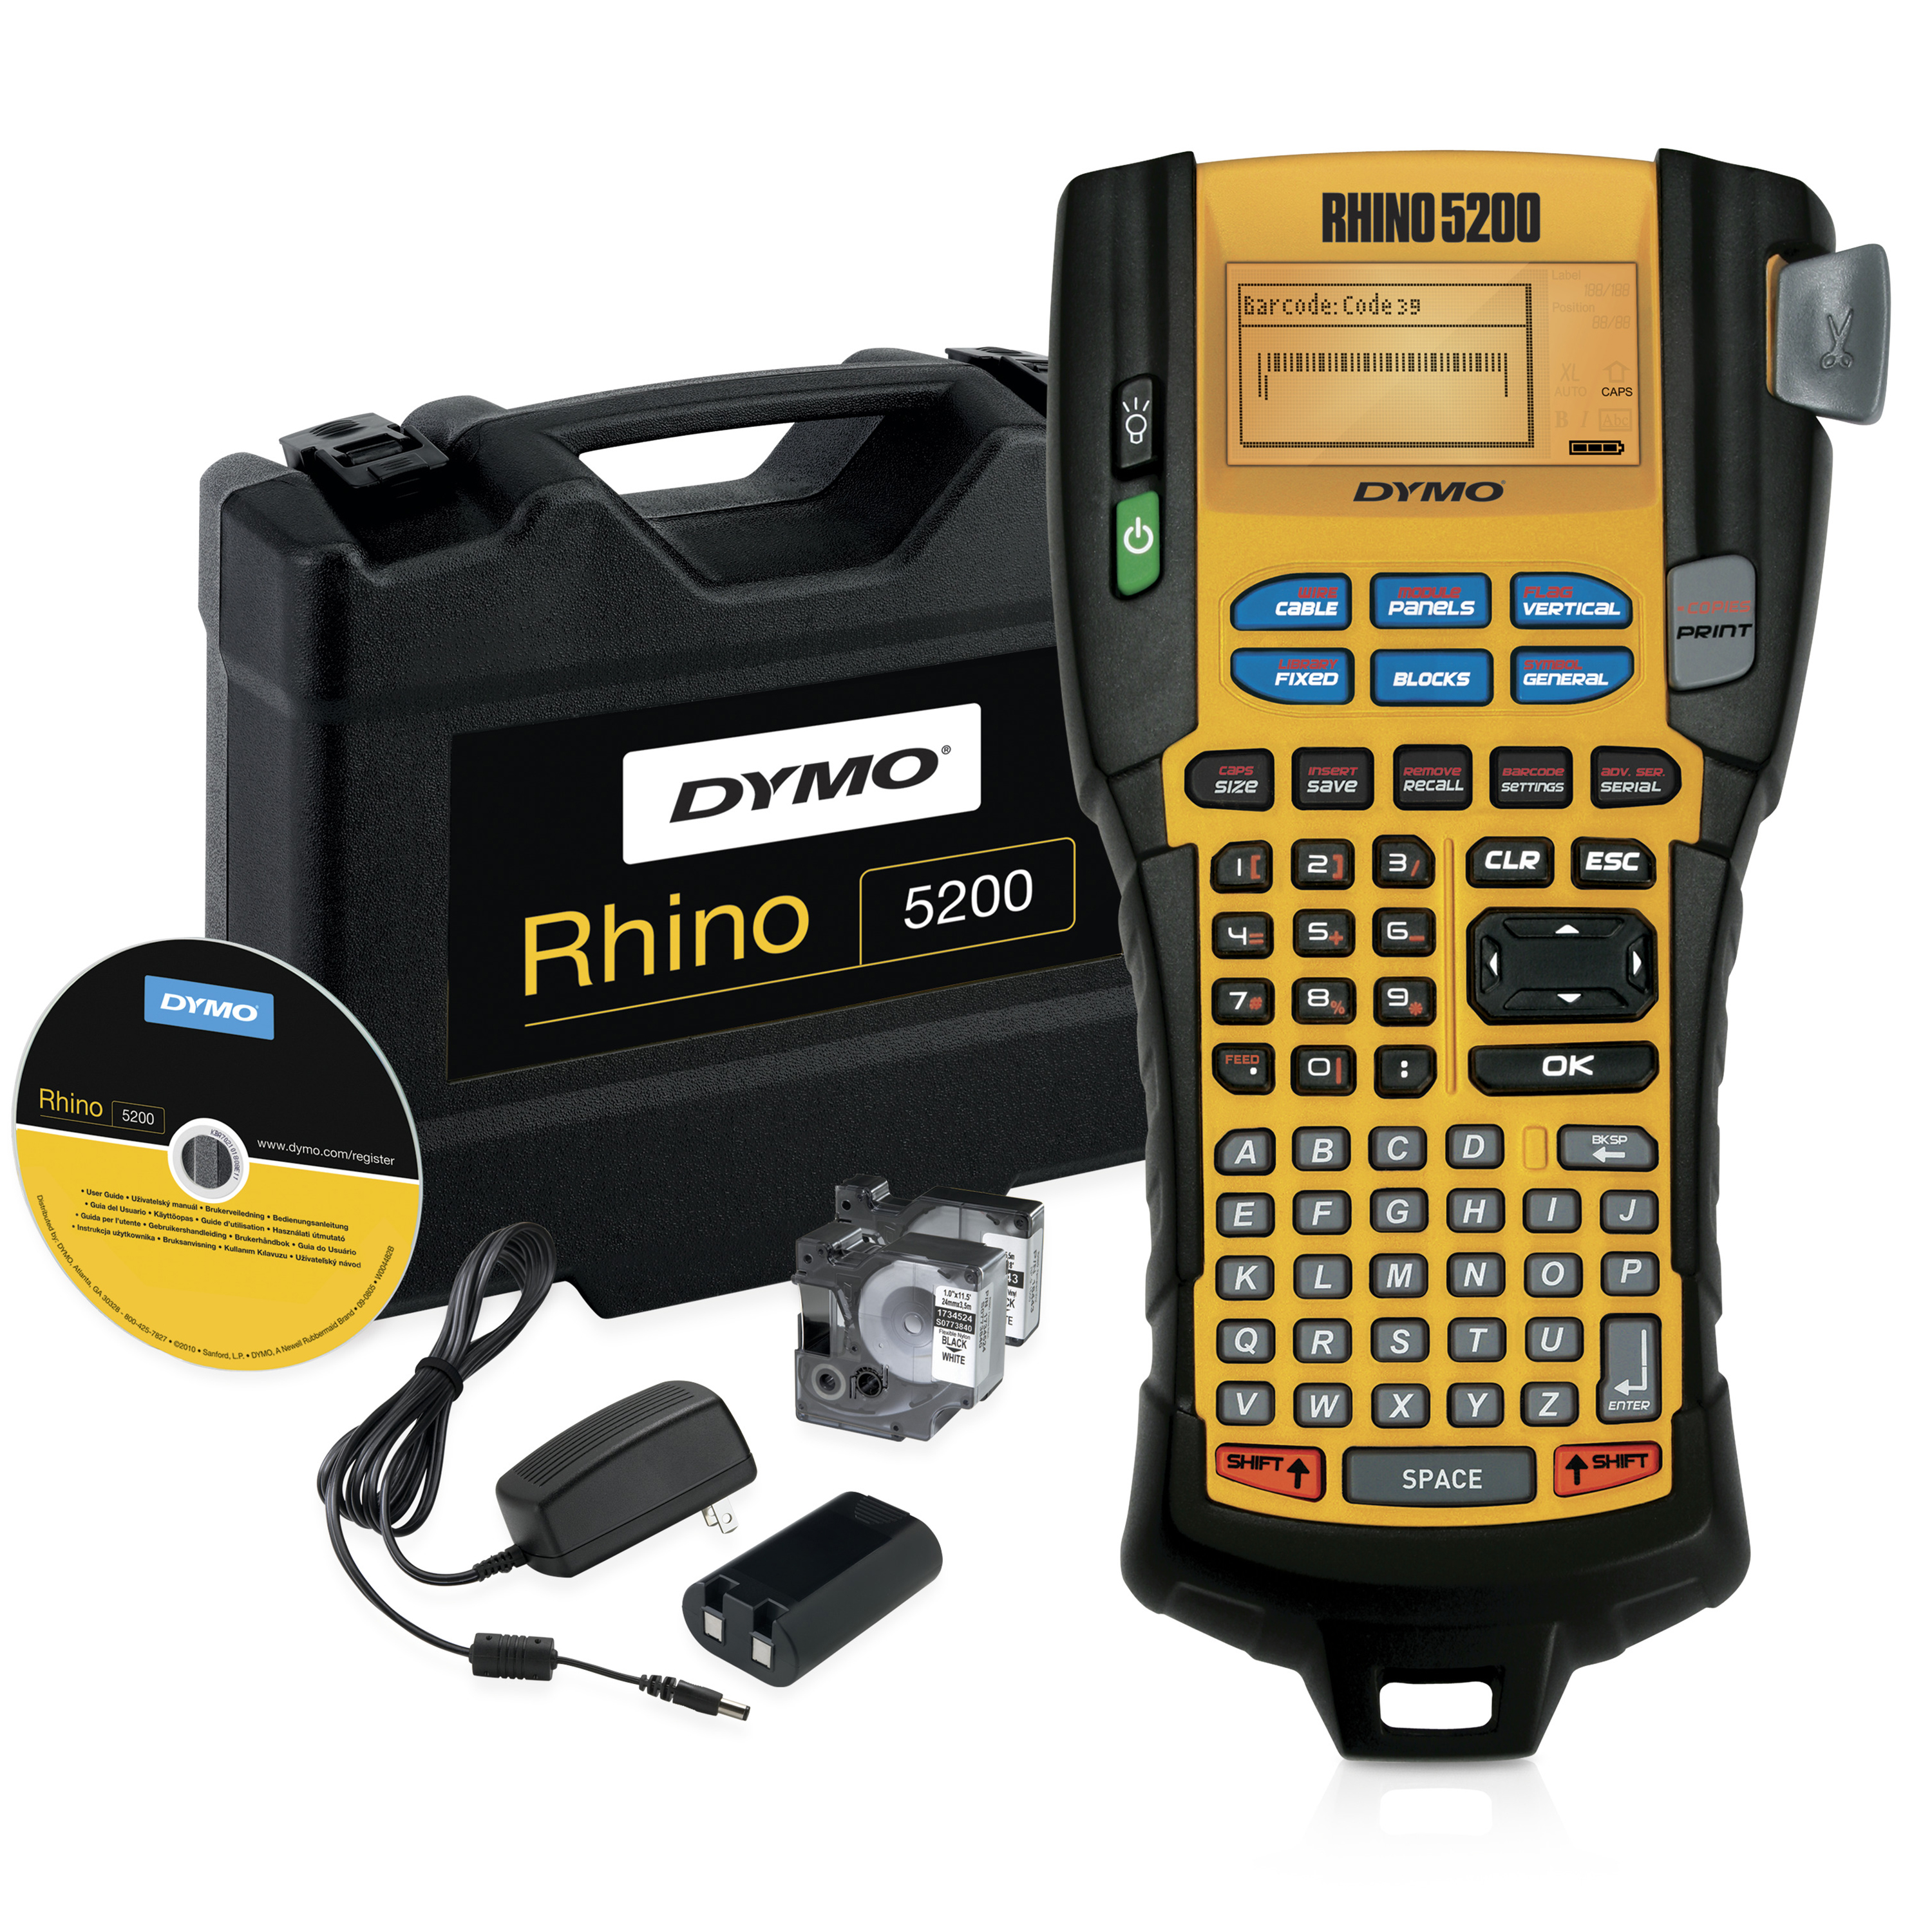 DYMO | Rhino 5200 - Industrielles Beschriftungsgerät | ABC-Tastatur | im KofferSet